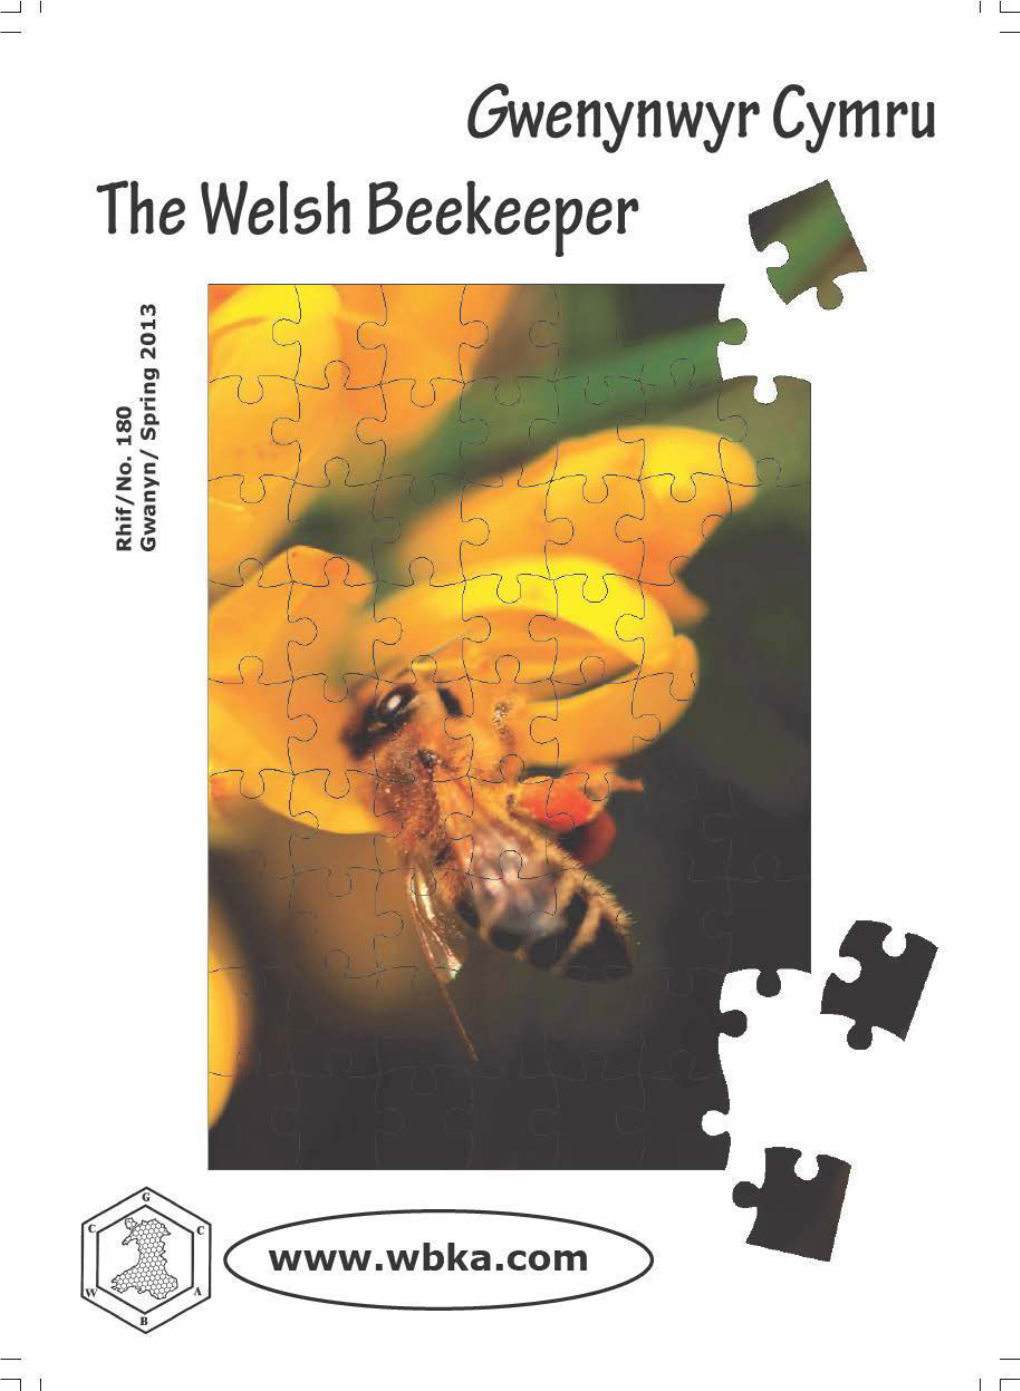 Welsh Beekeepers' Association Cymdeithas Gwenynwyr Cymru